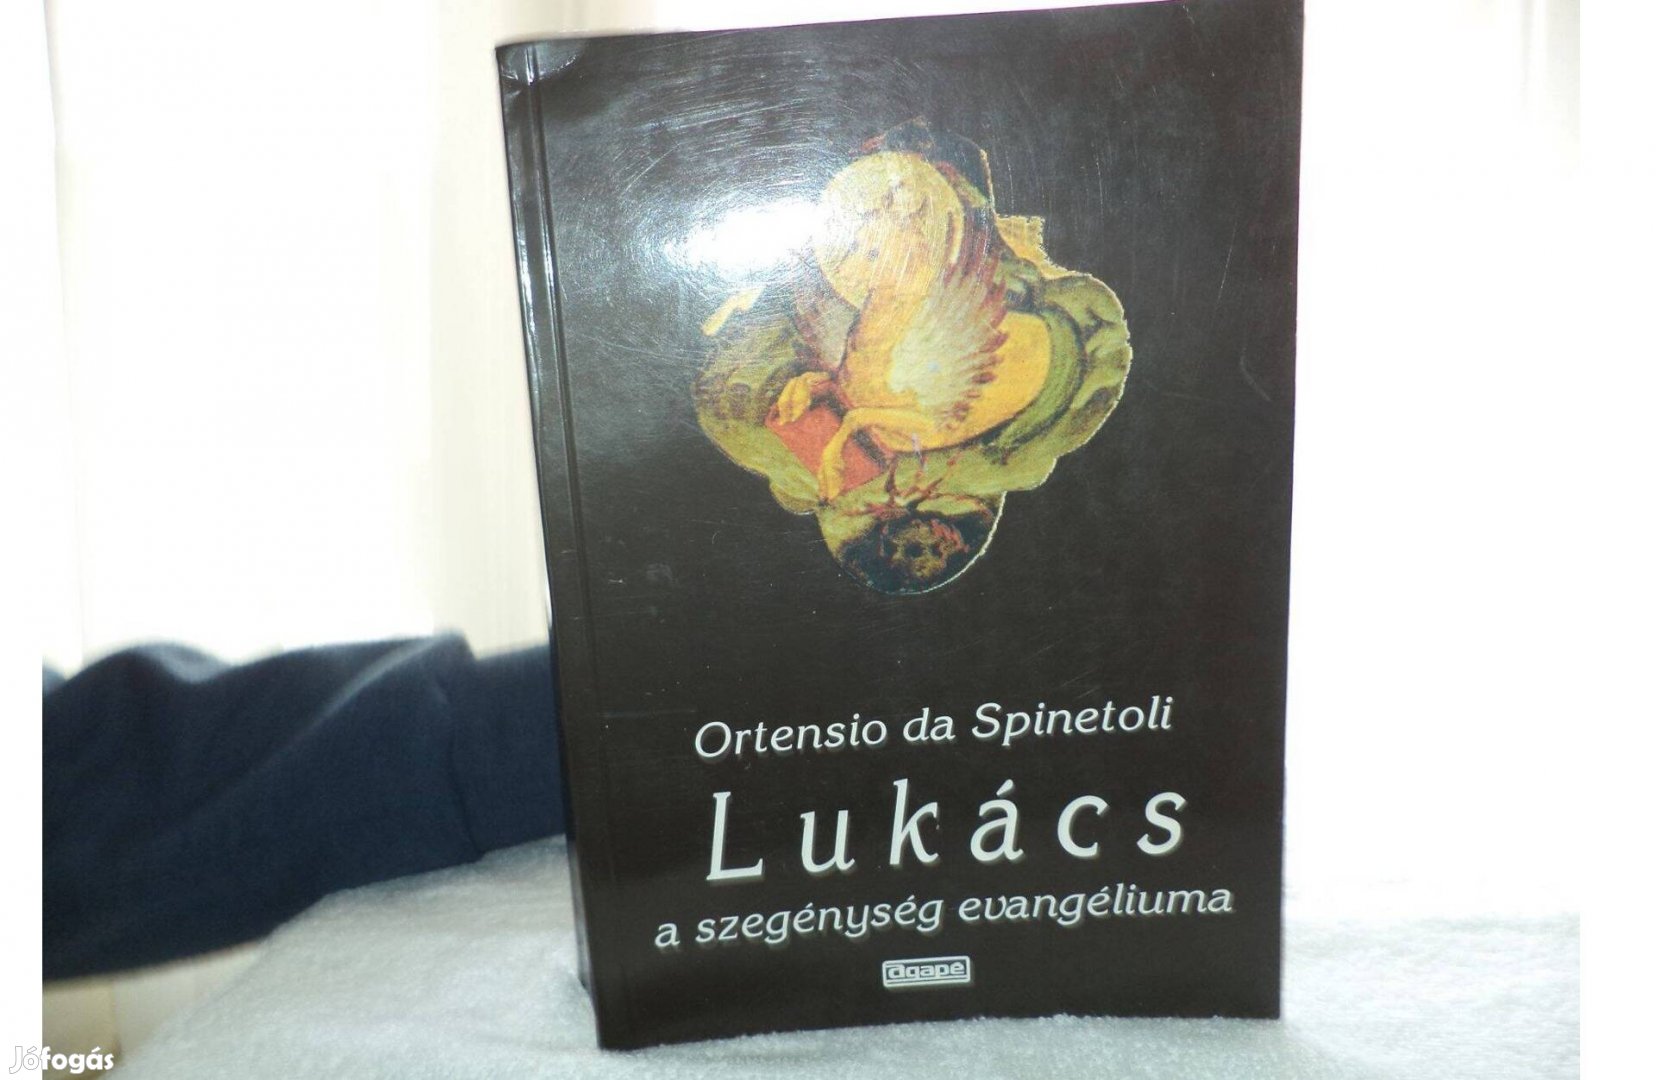 Ortensio da Spinetoli Lukács a szegények evangéliuma